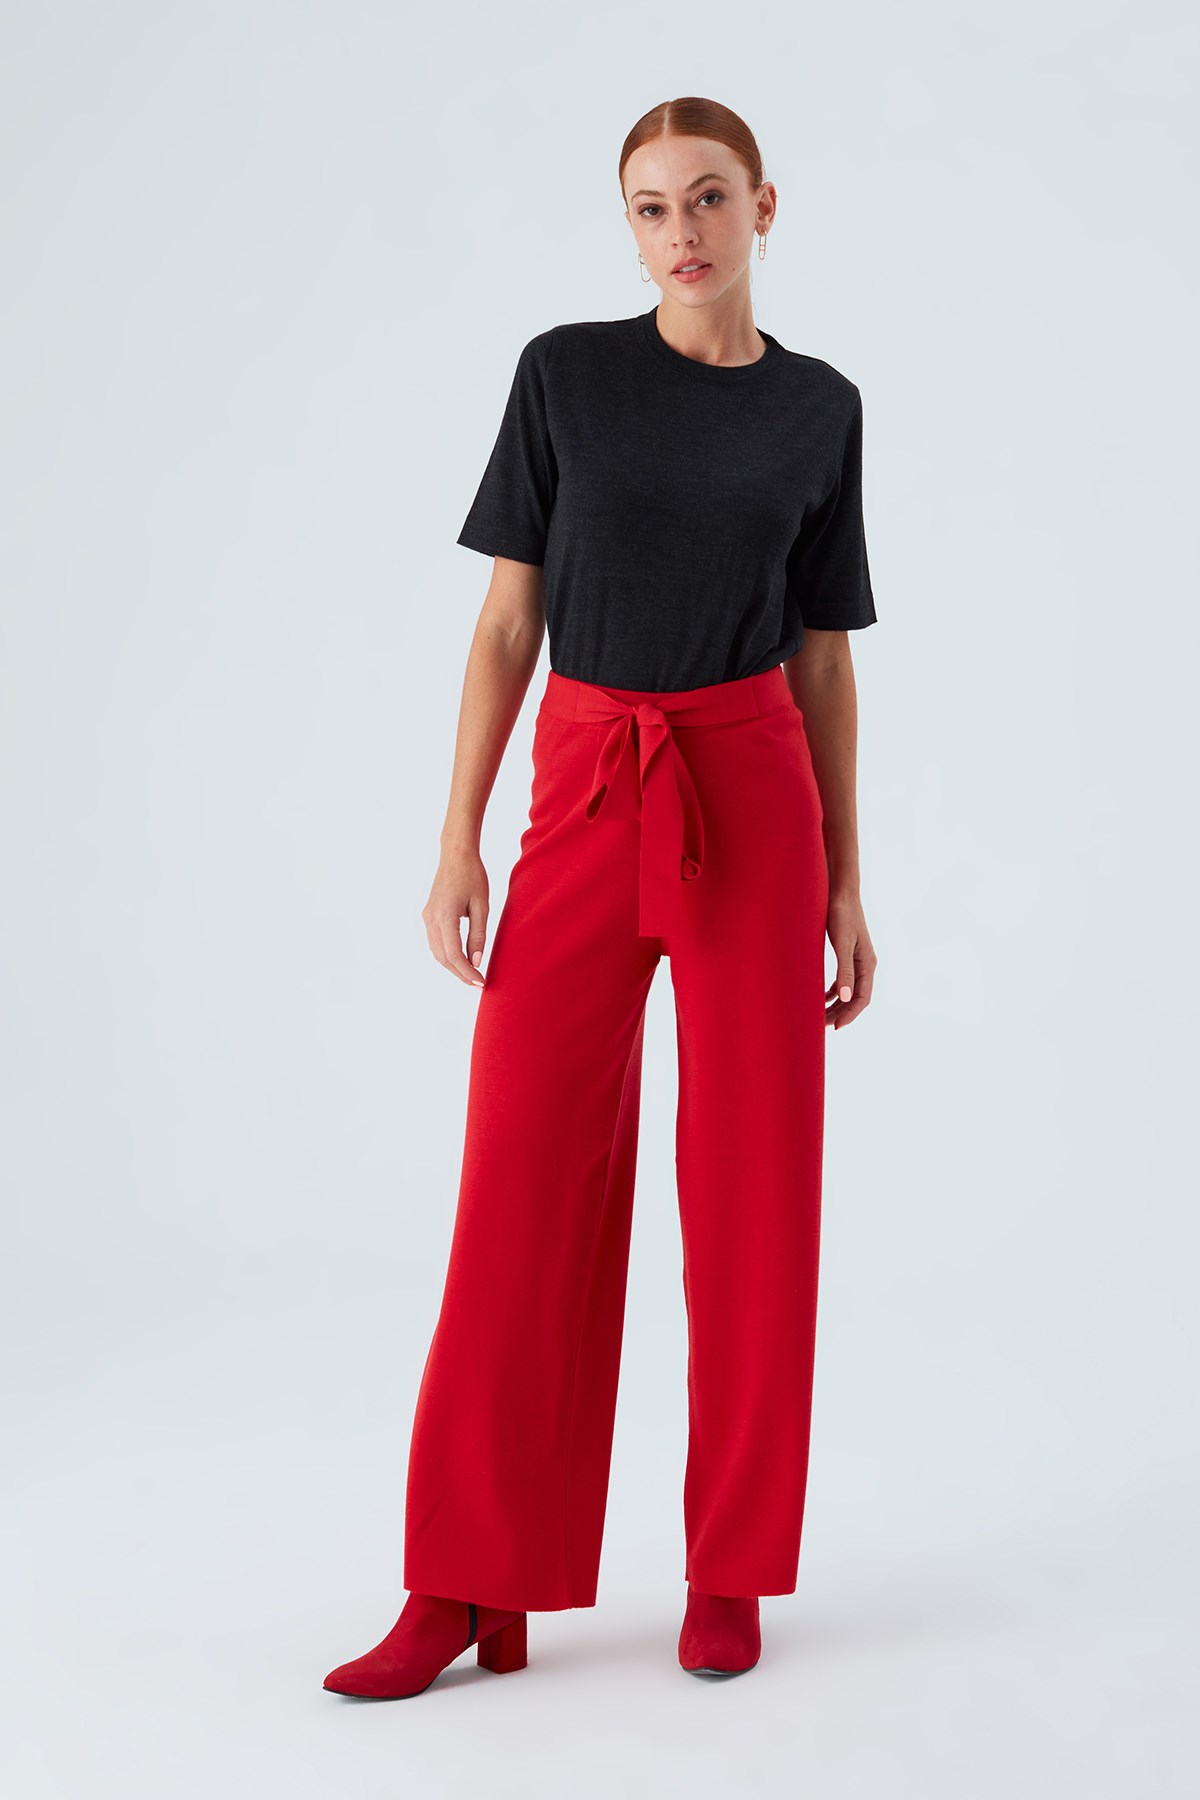 Peraluna Boru Paça Yüksek Bel Kadın Triko Pantolon Kırmızı